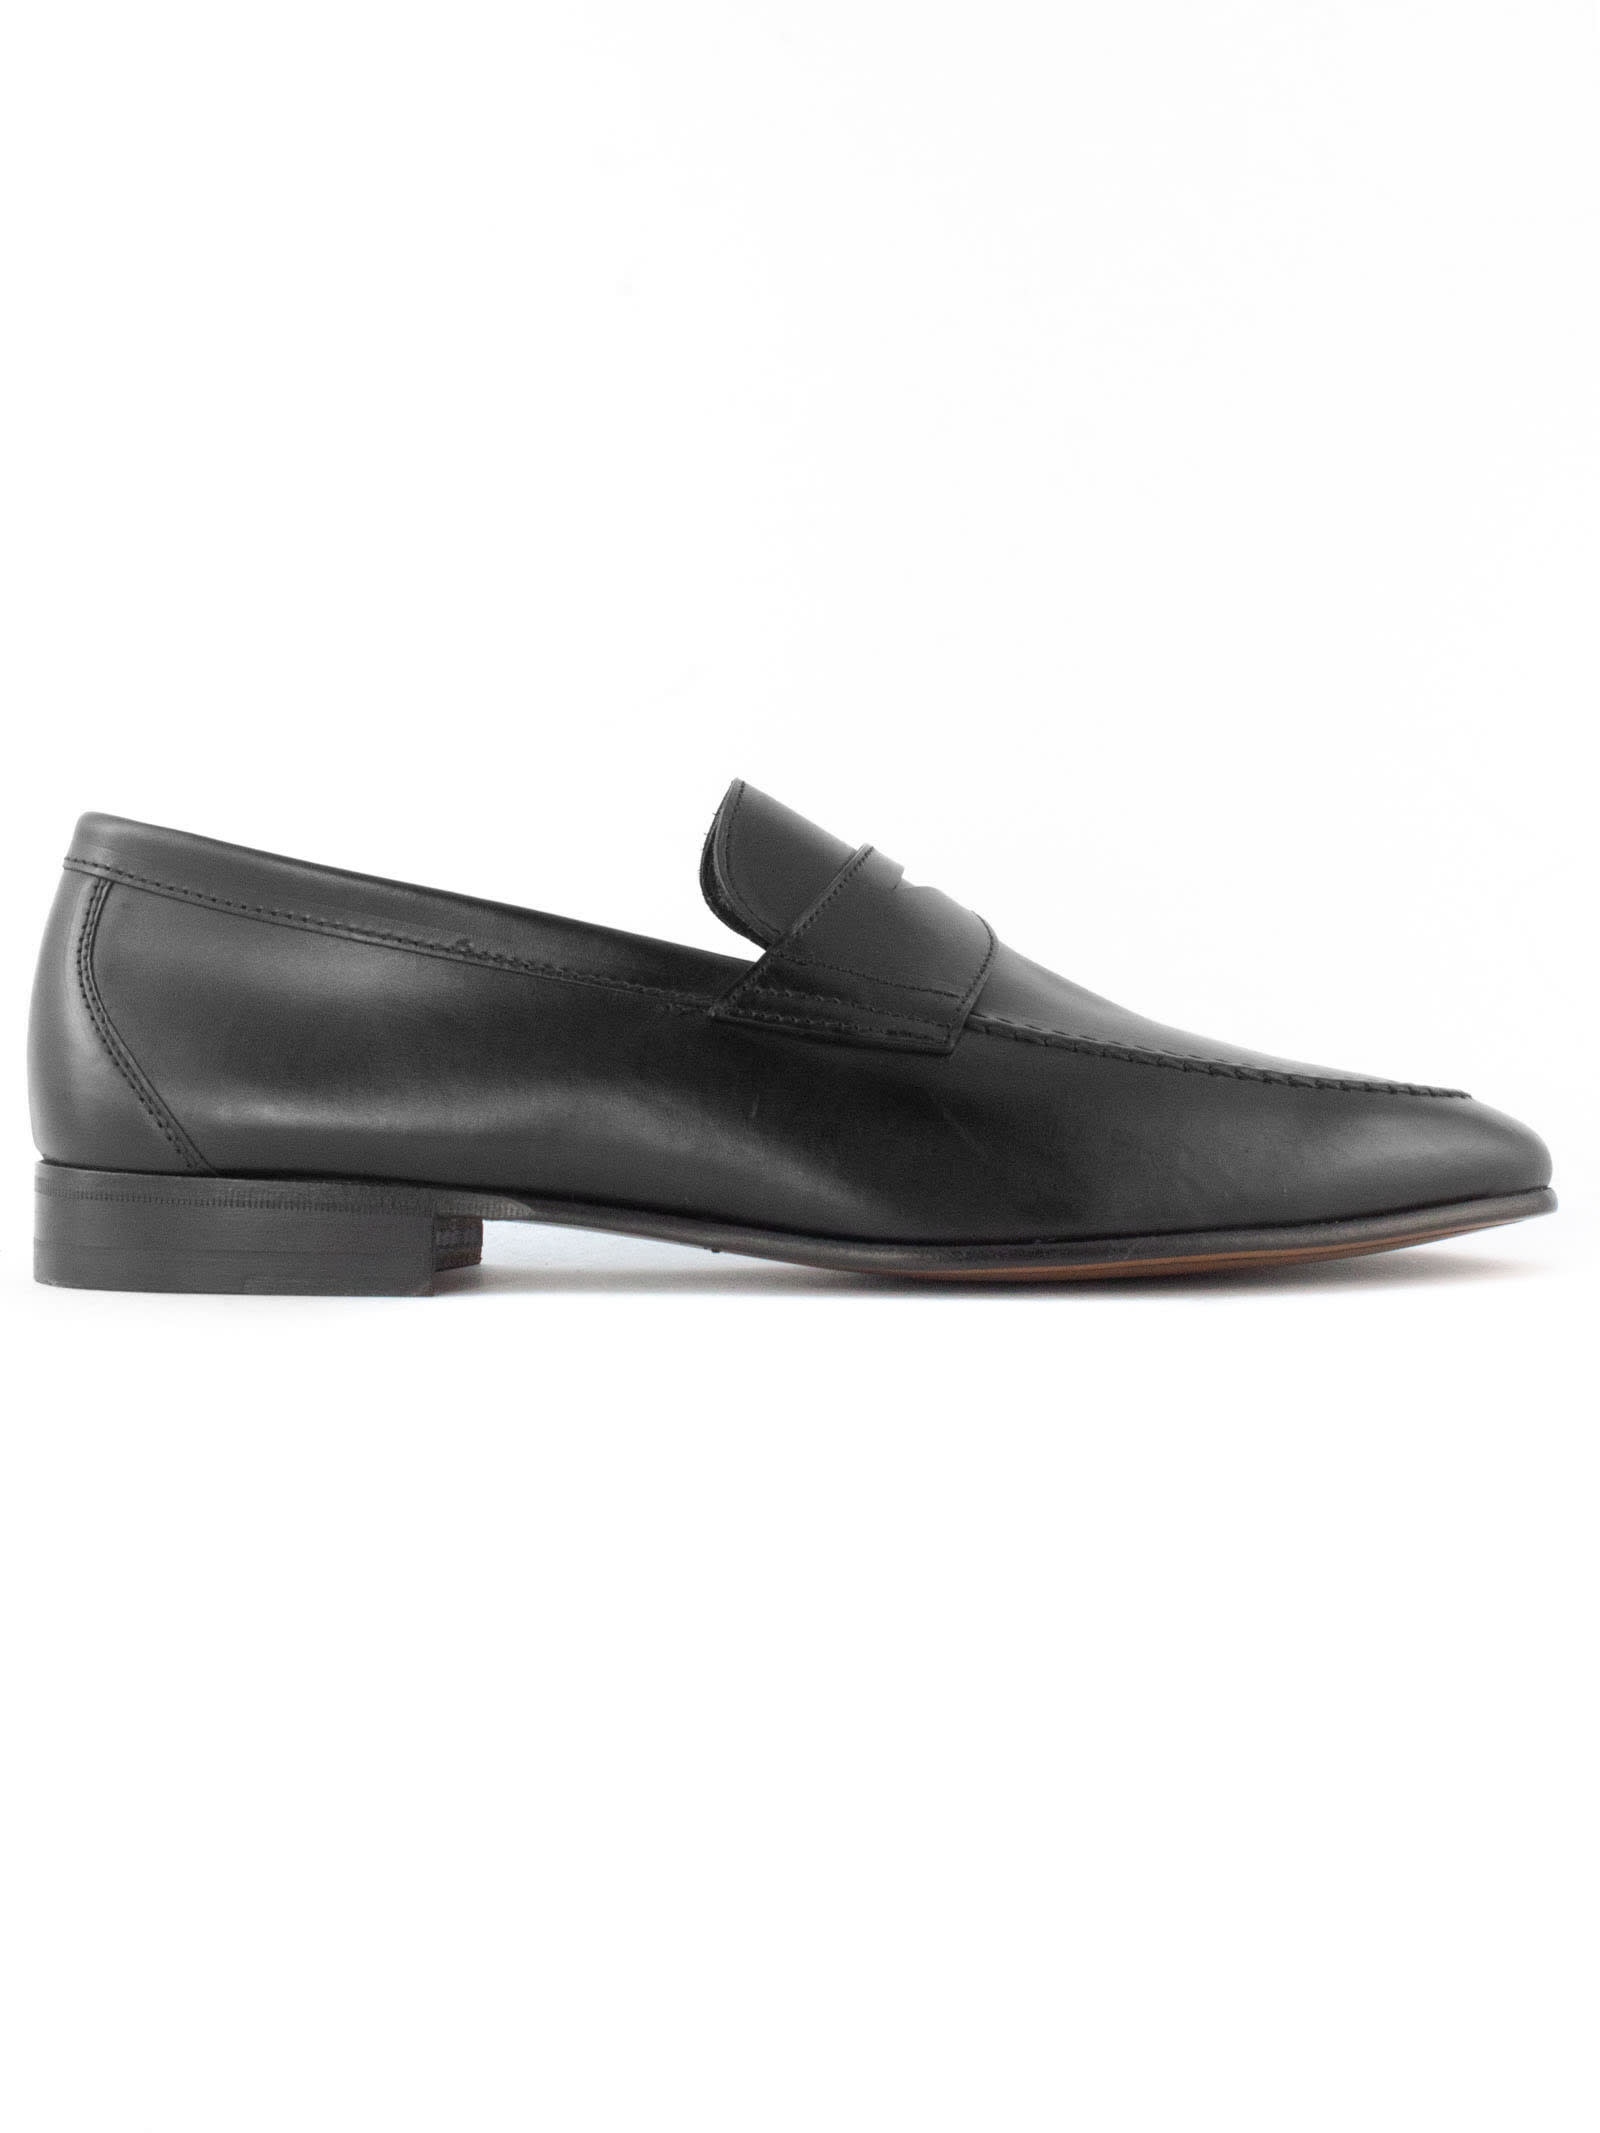 1707 Black Leather Loafer